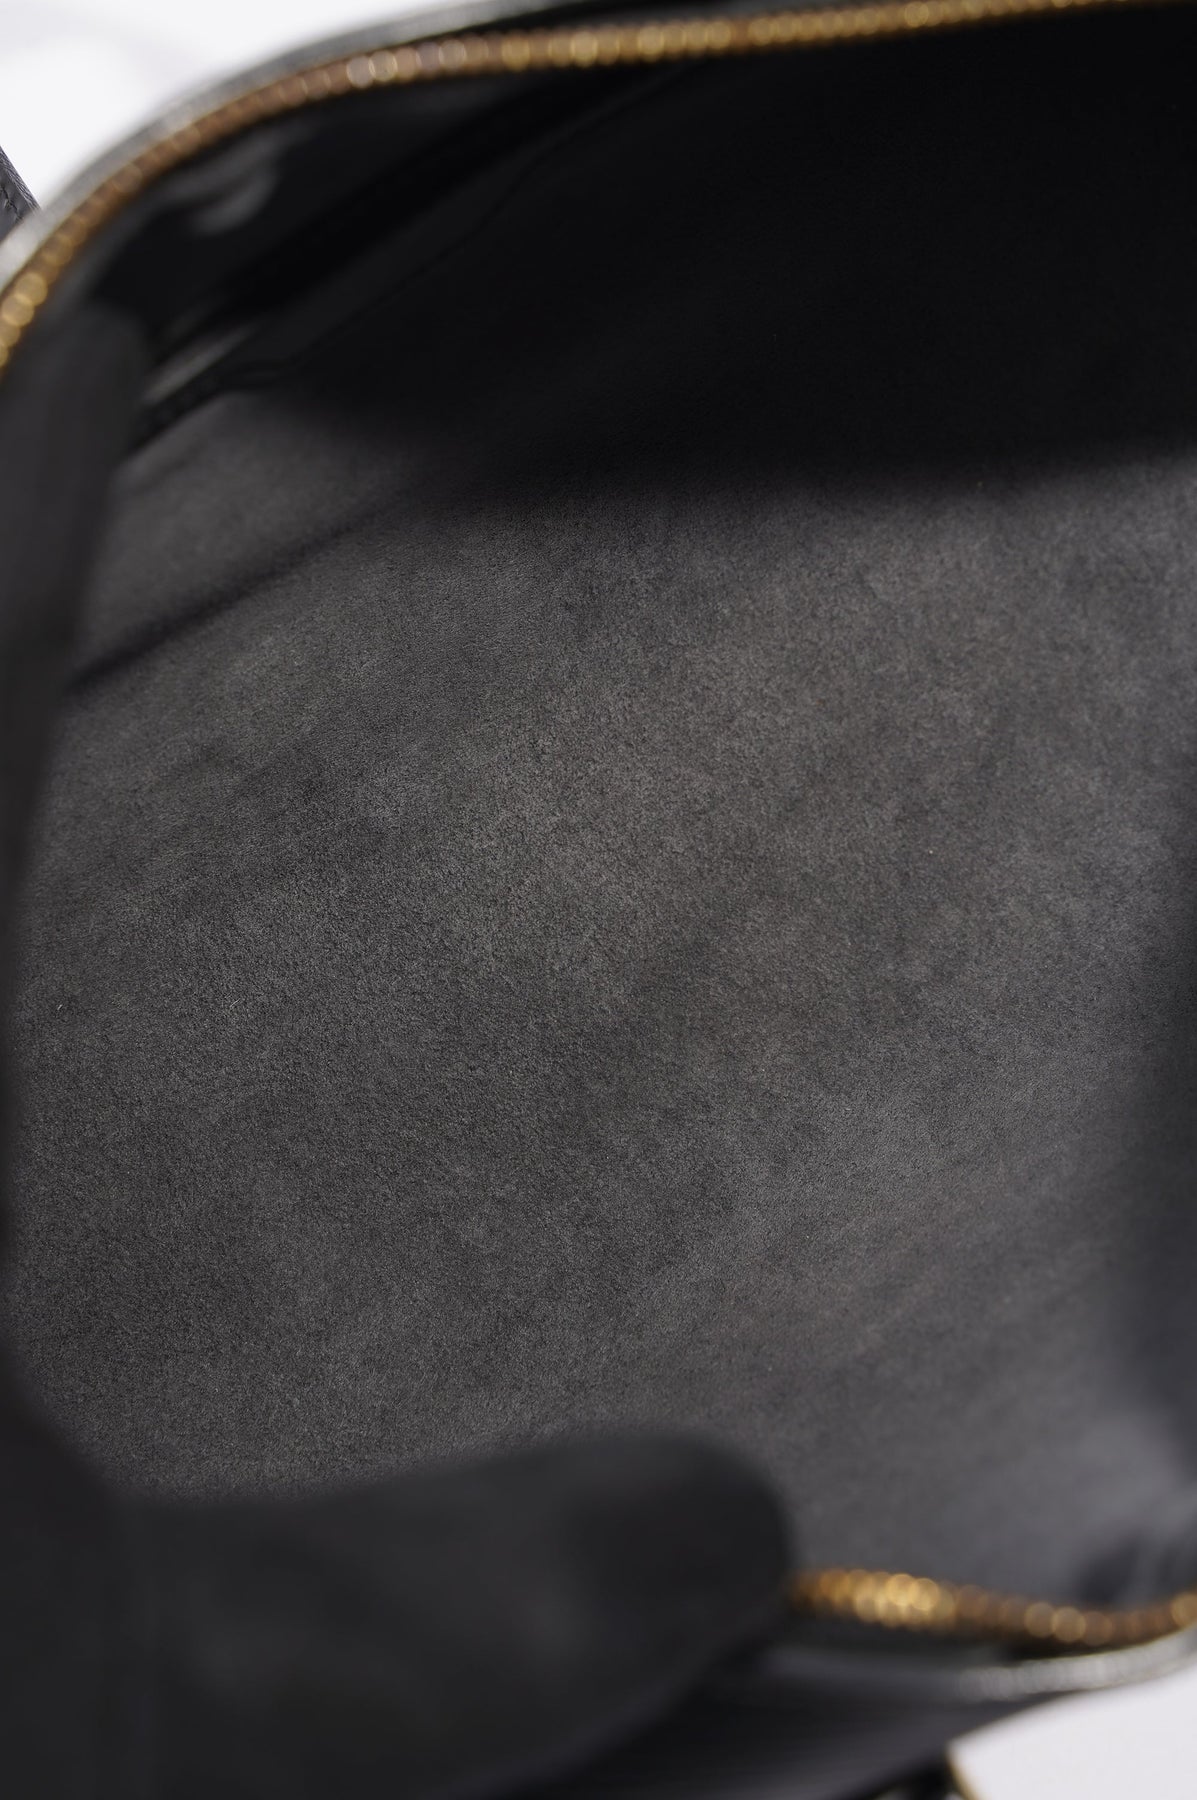 Second Style Koblenz Designermode für Damen & Herren - Louis Vuitton  Geldbörse Epi Leather blue🌊Modell Sarah new full set 495€😍#louisvuitton  #louisvuittongeldbörse #louisvuittonepileather #fashionlove